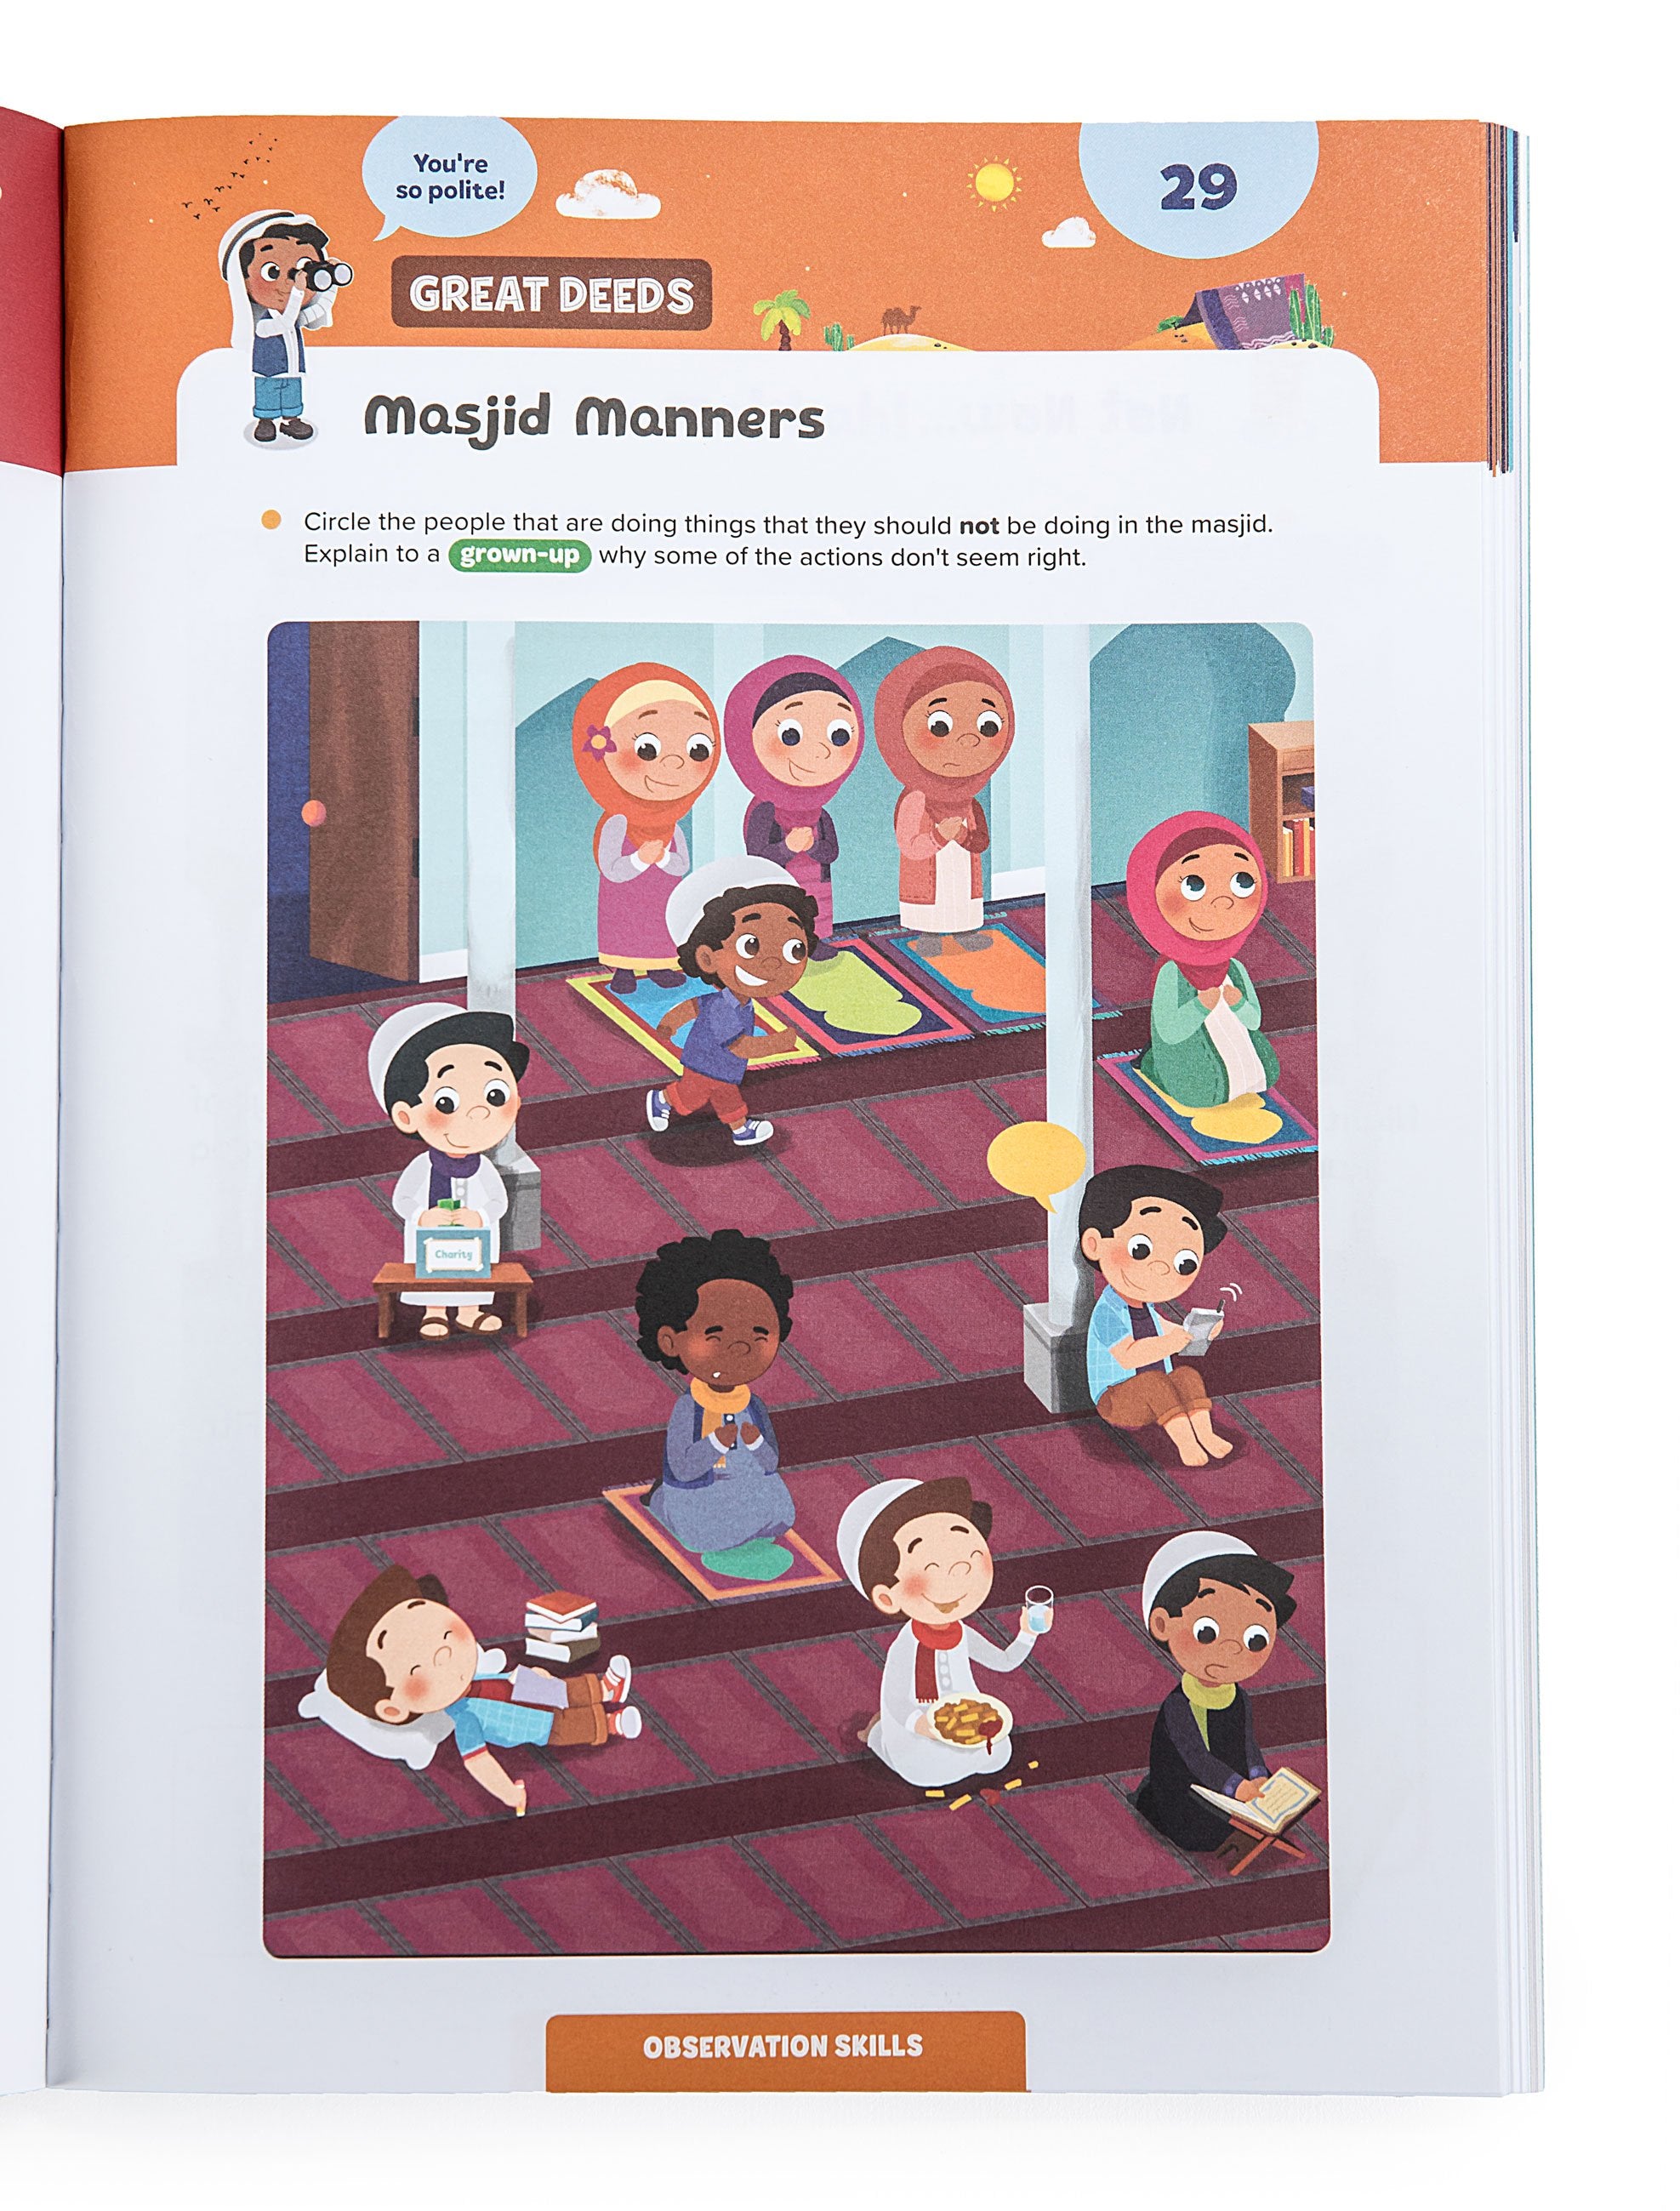 Ramadan Activity Book (Big Kids)